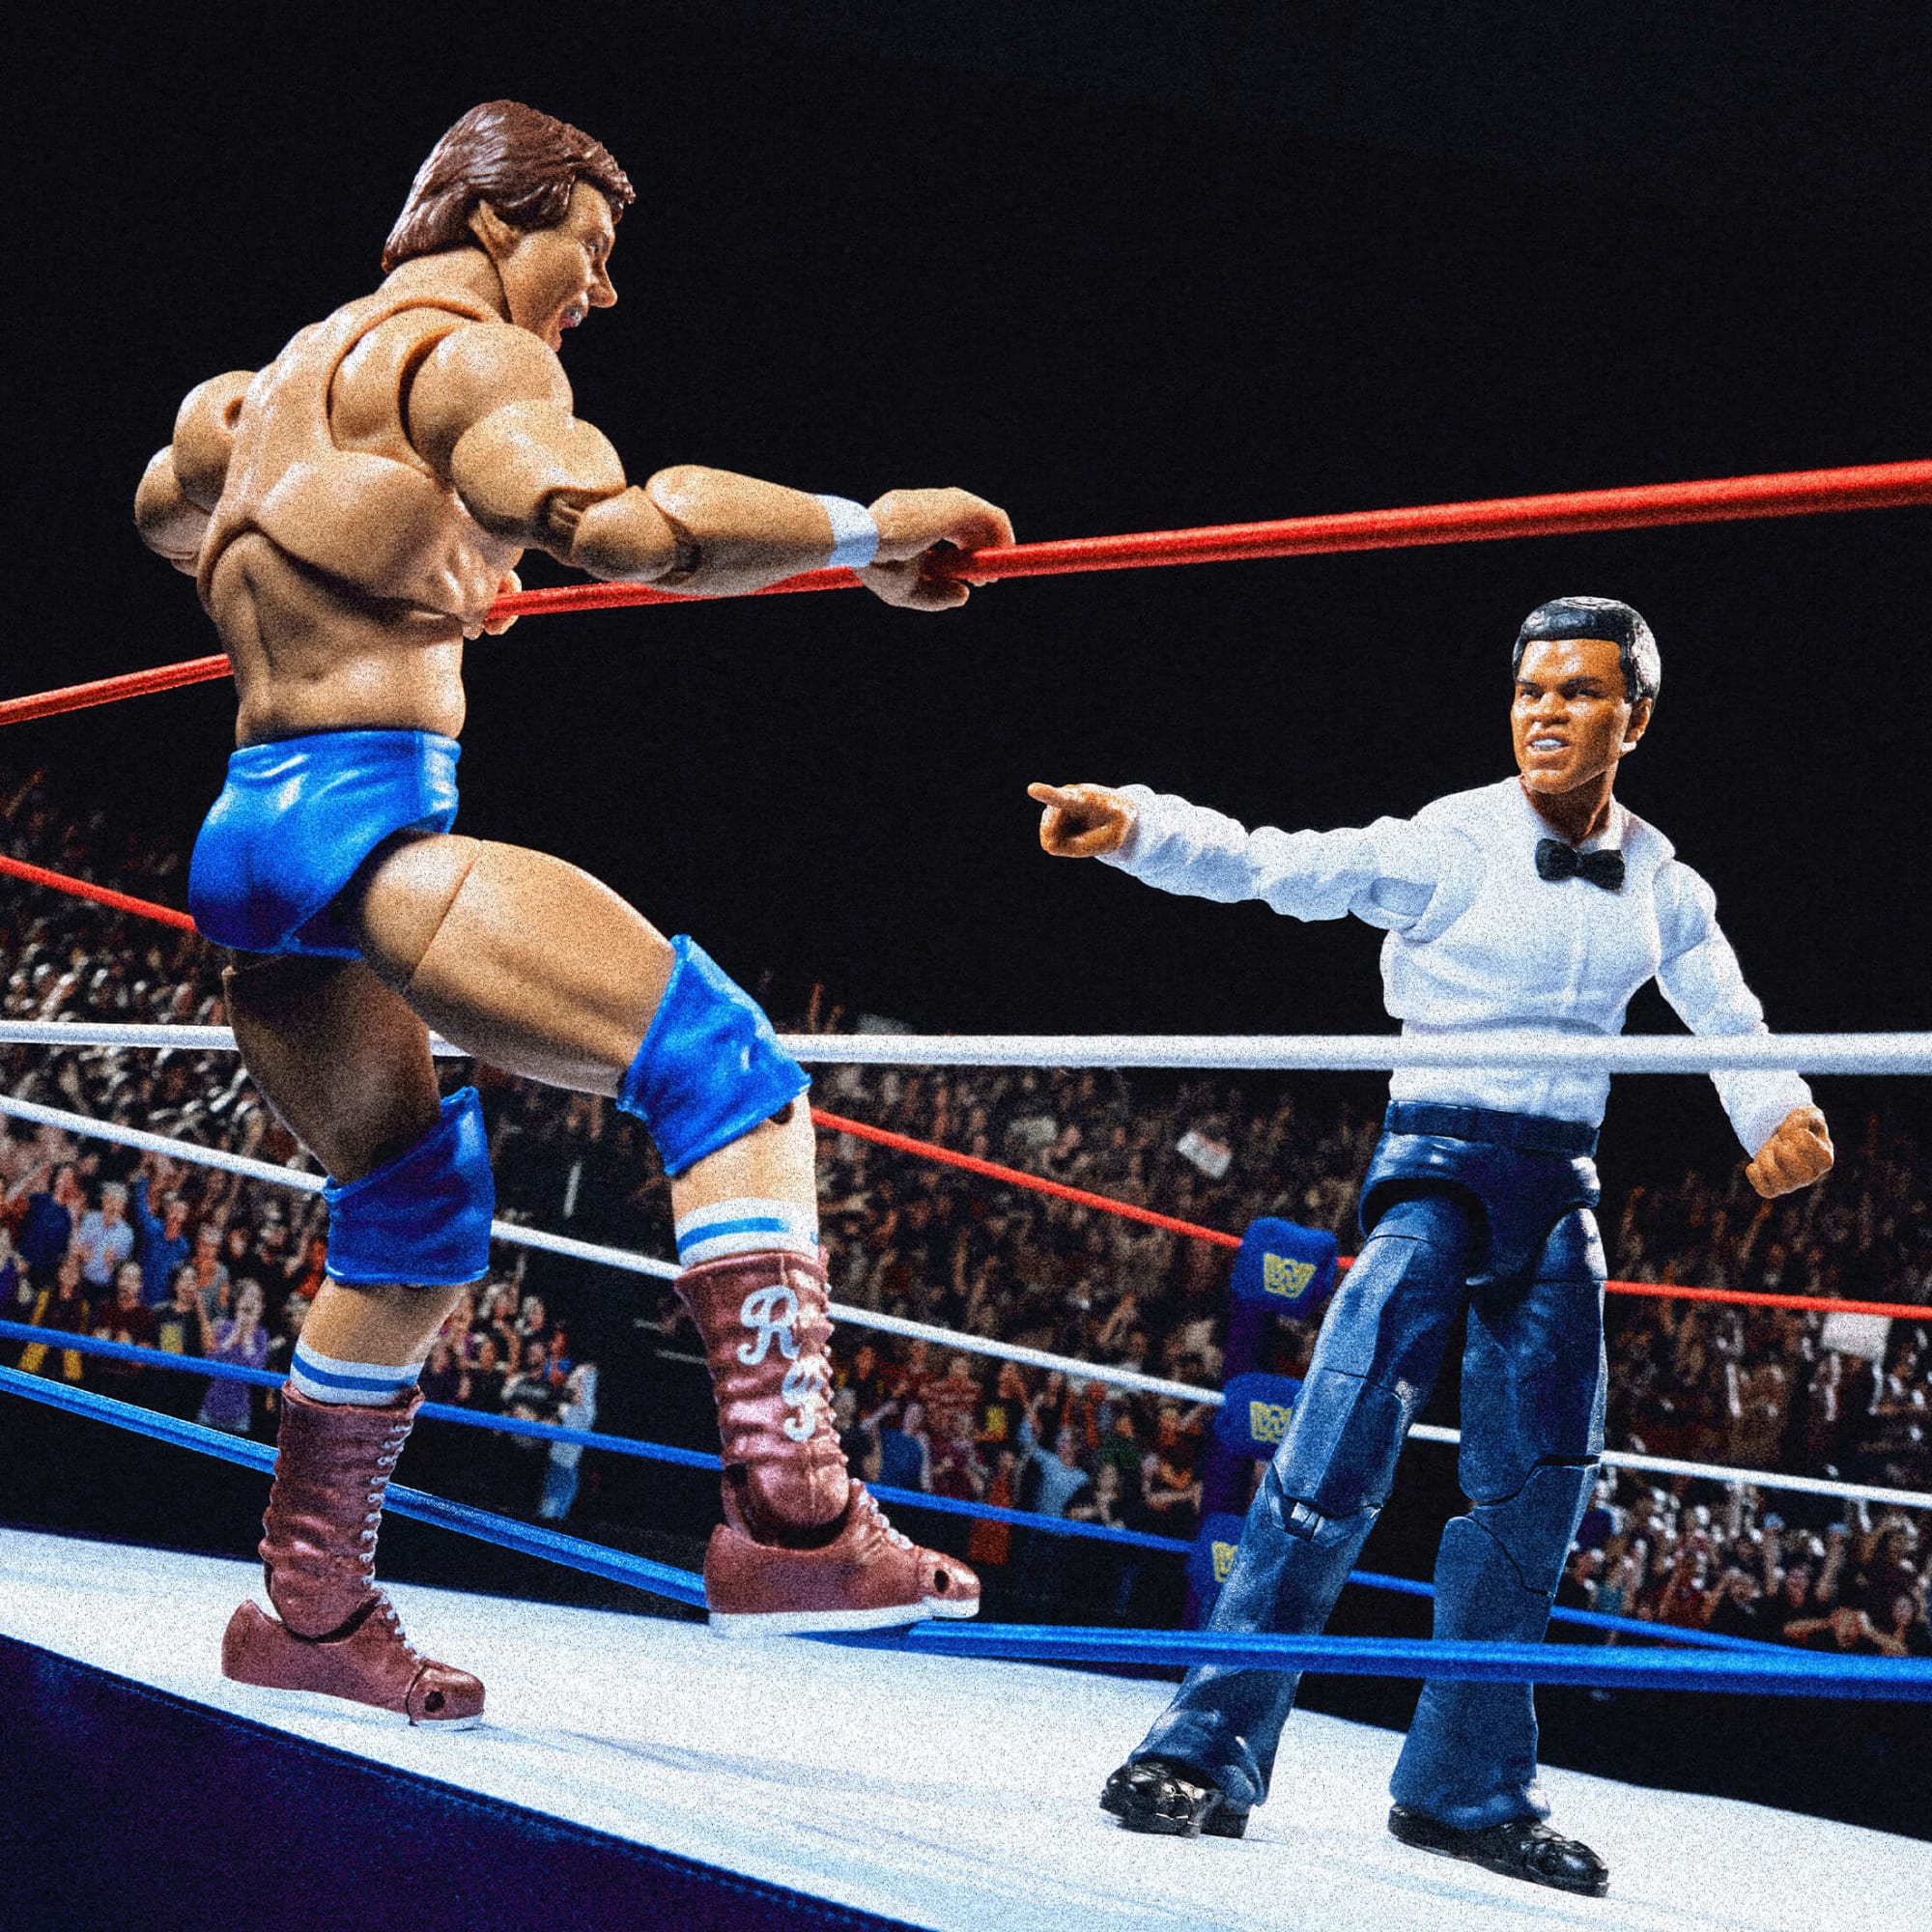 Set Figura de Colección WWE Muhammad Ali Mattel Articulado